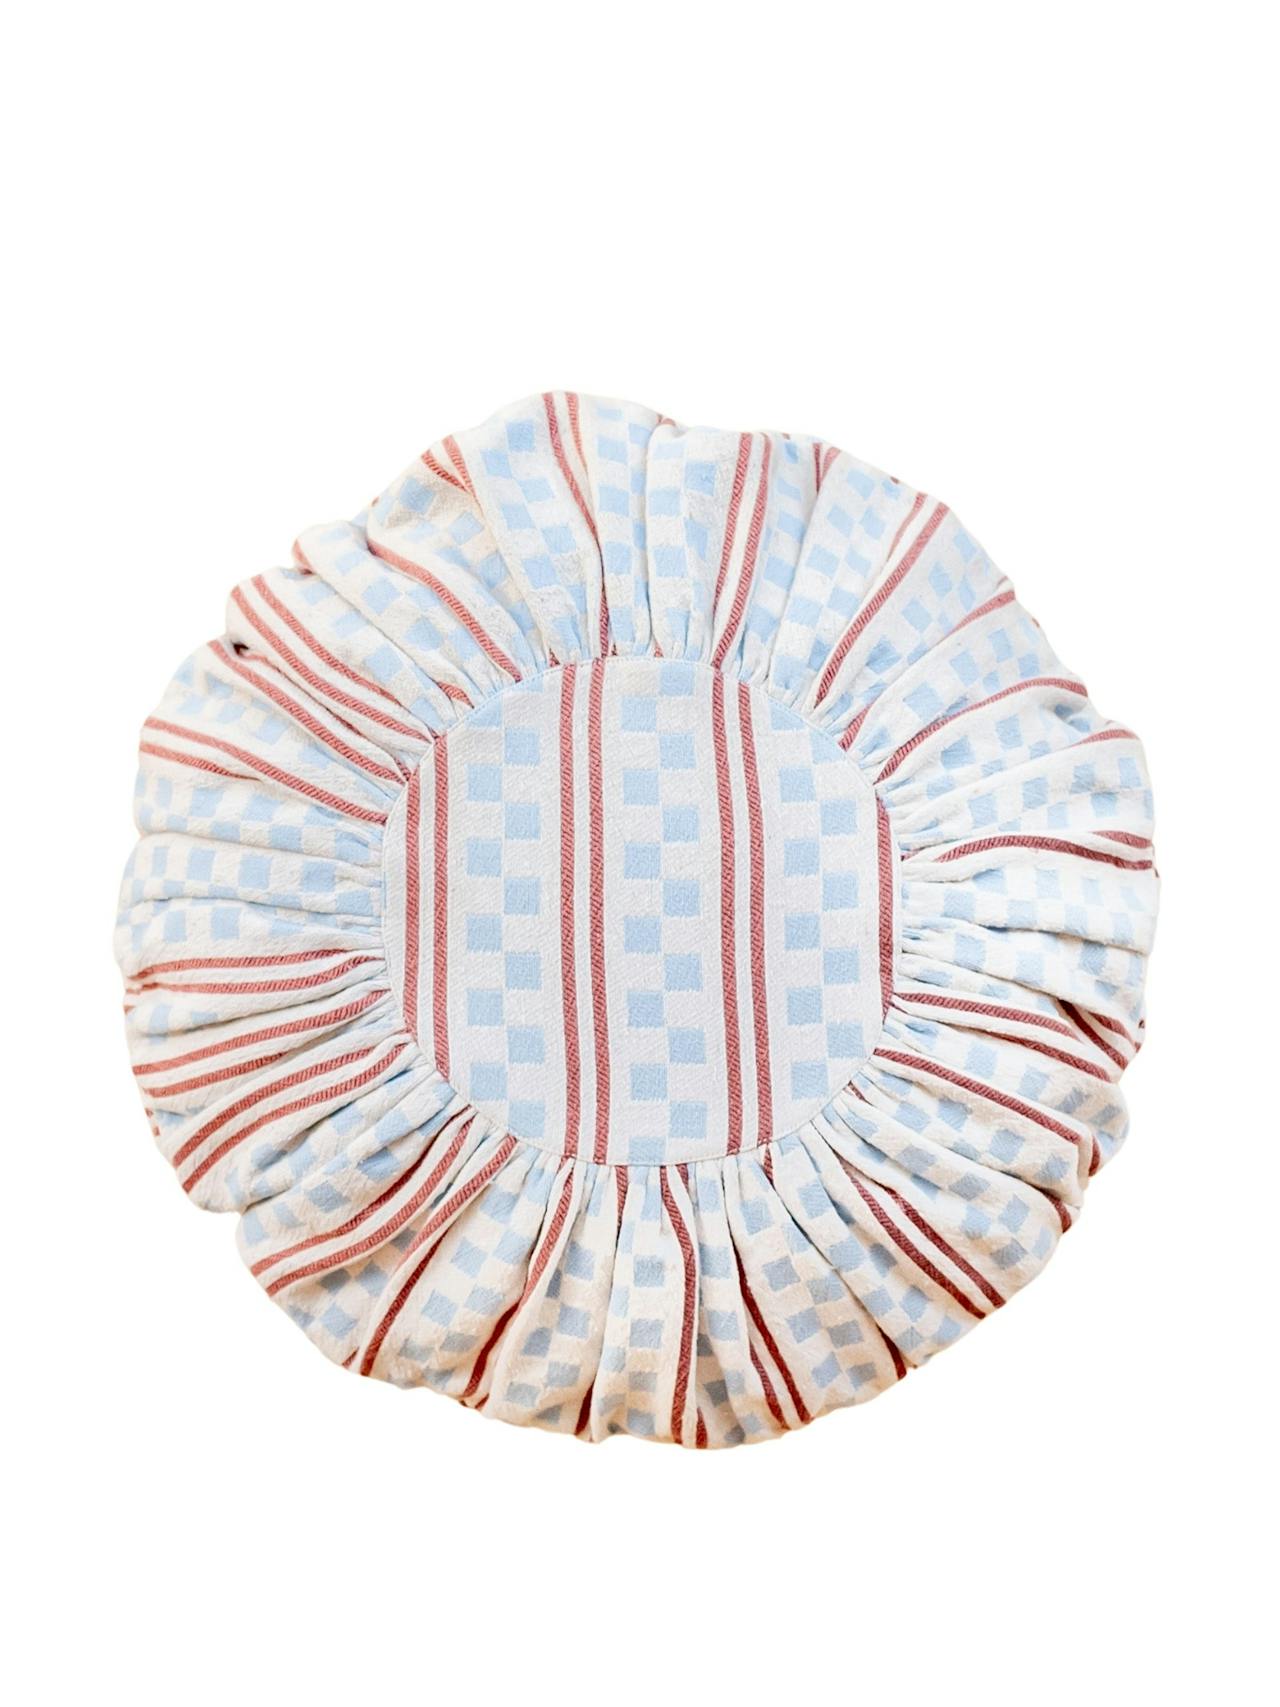 Blue stripe cotton cushion cover